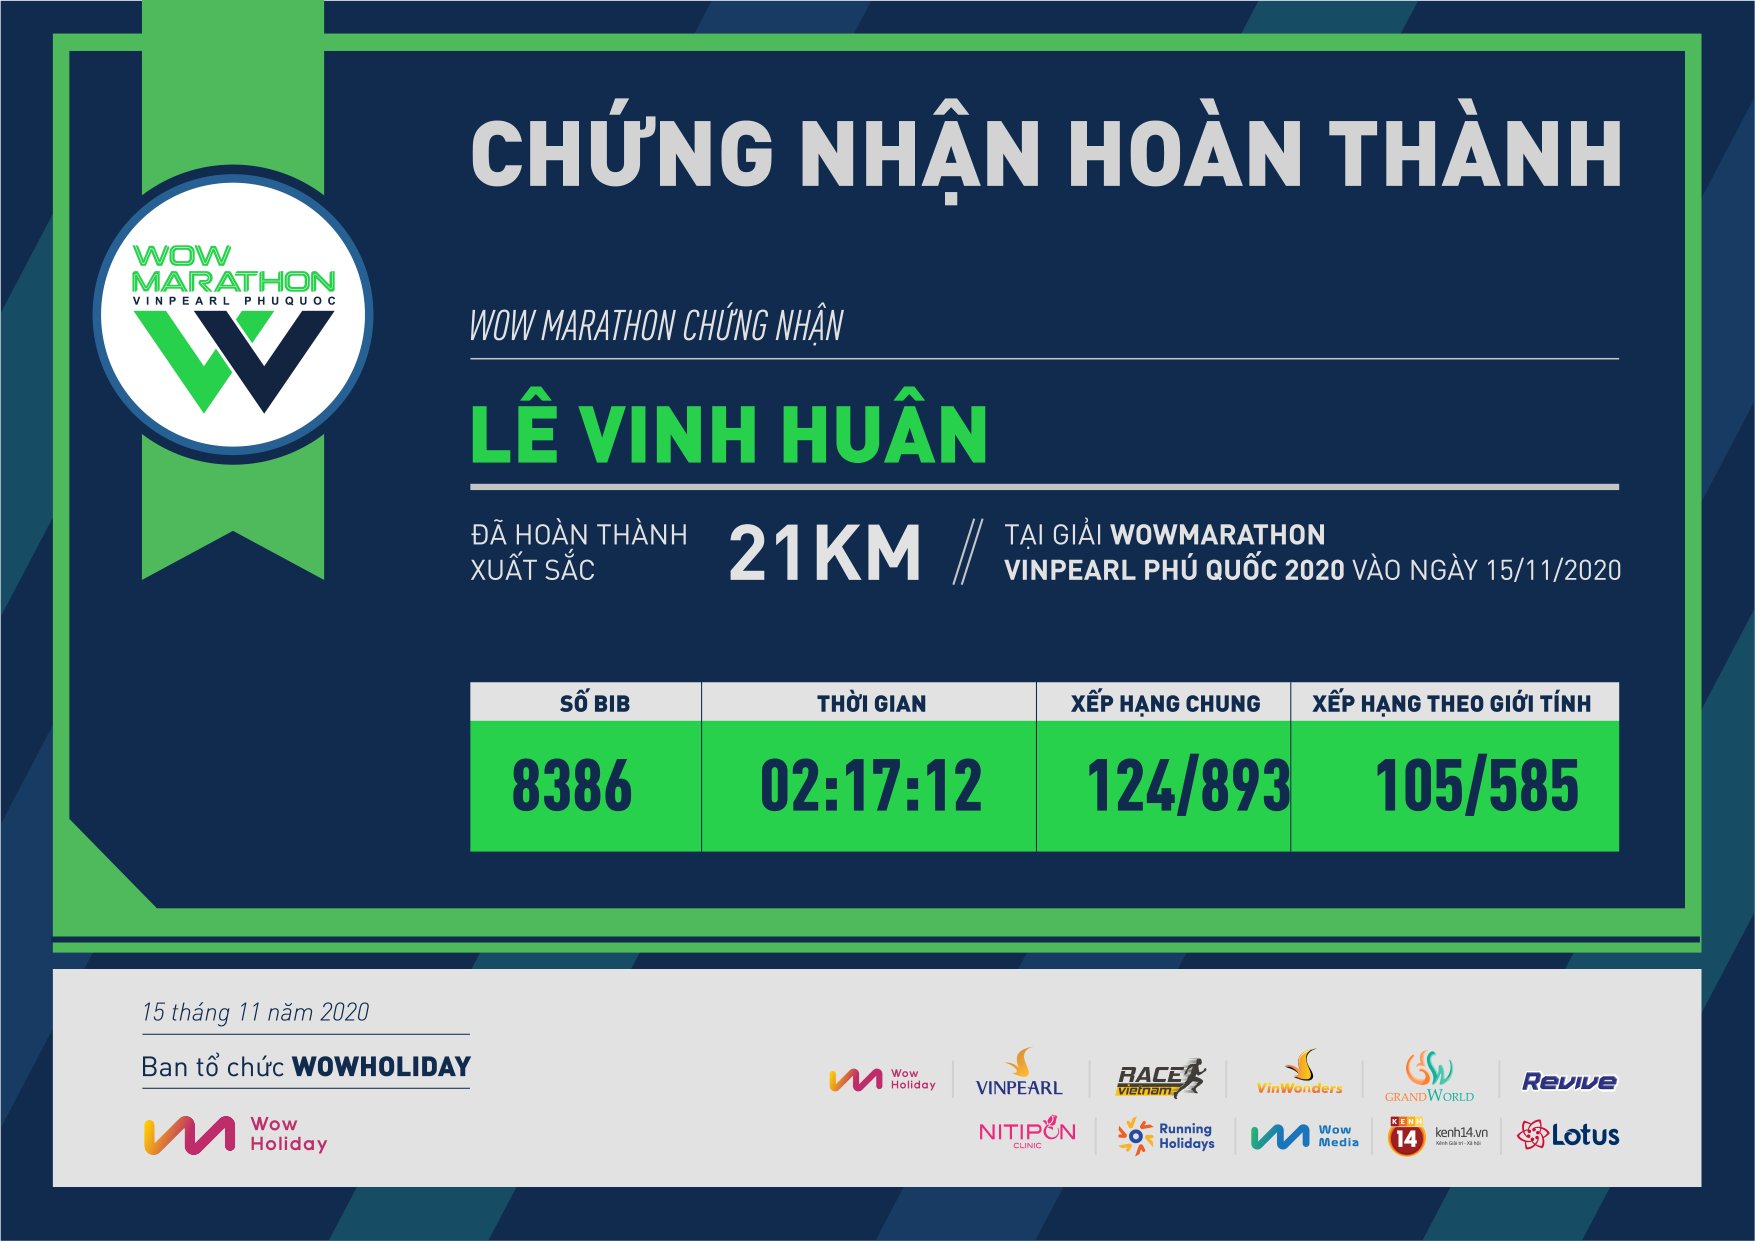 8386 - Lê Vinh Huân